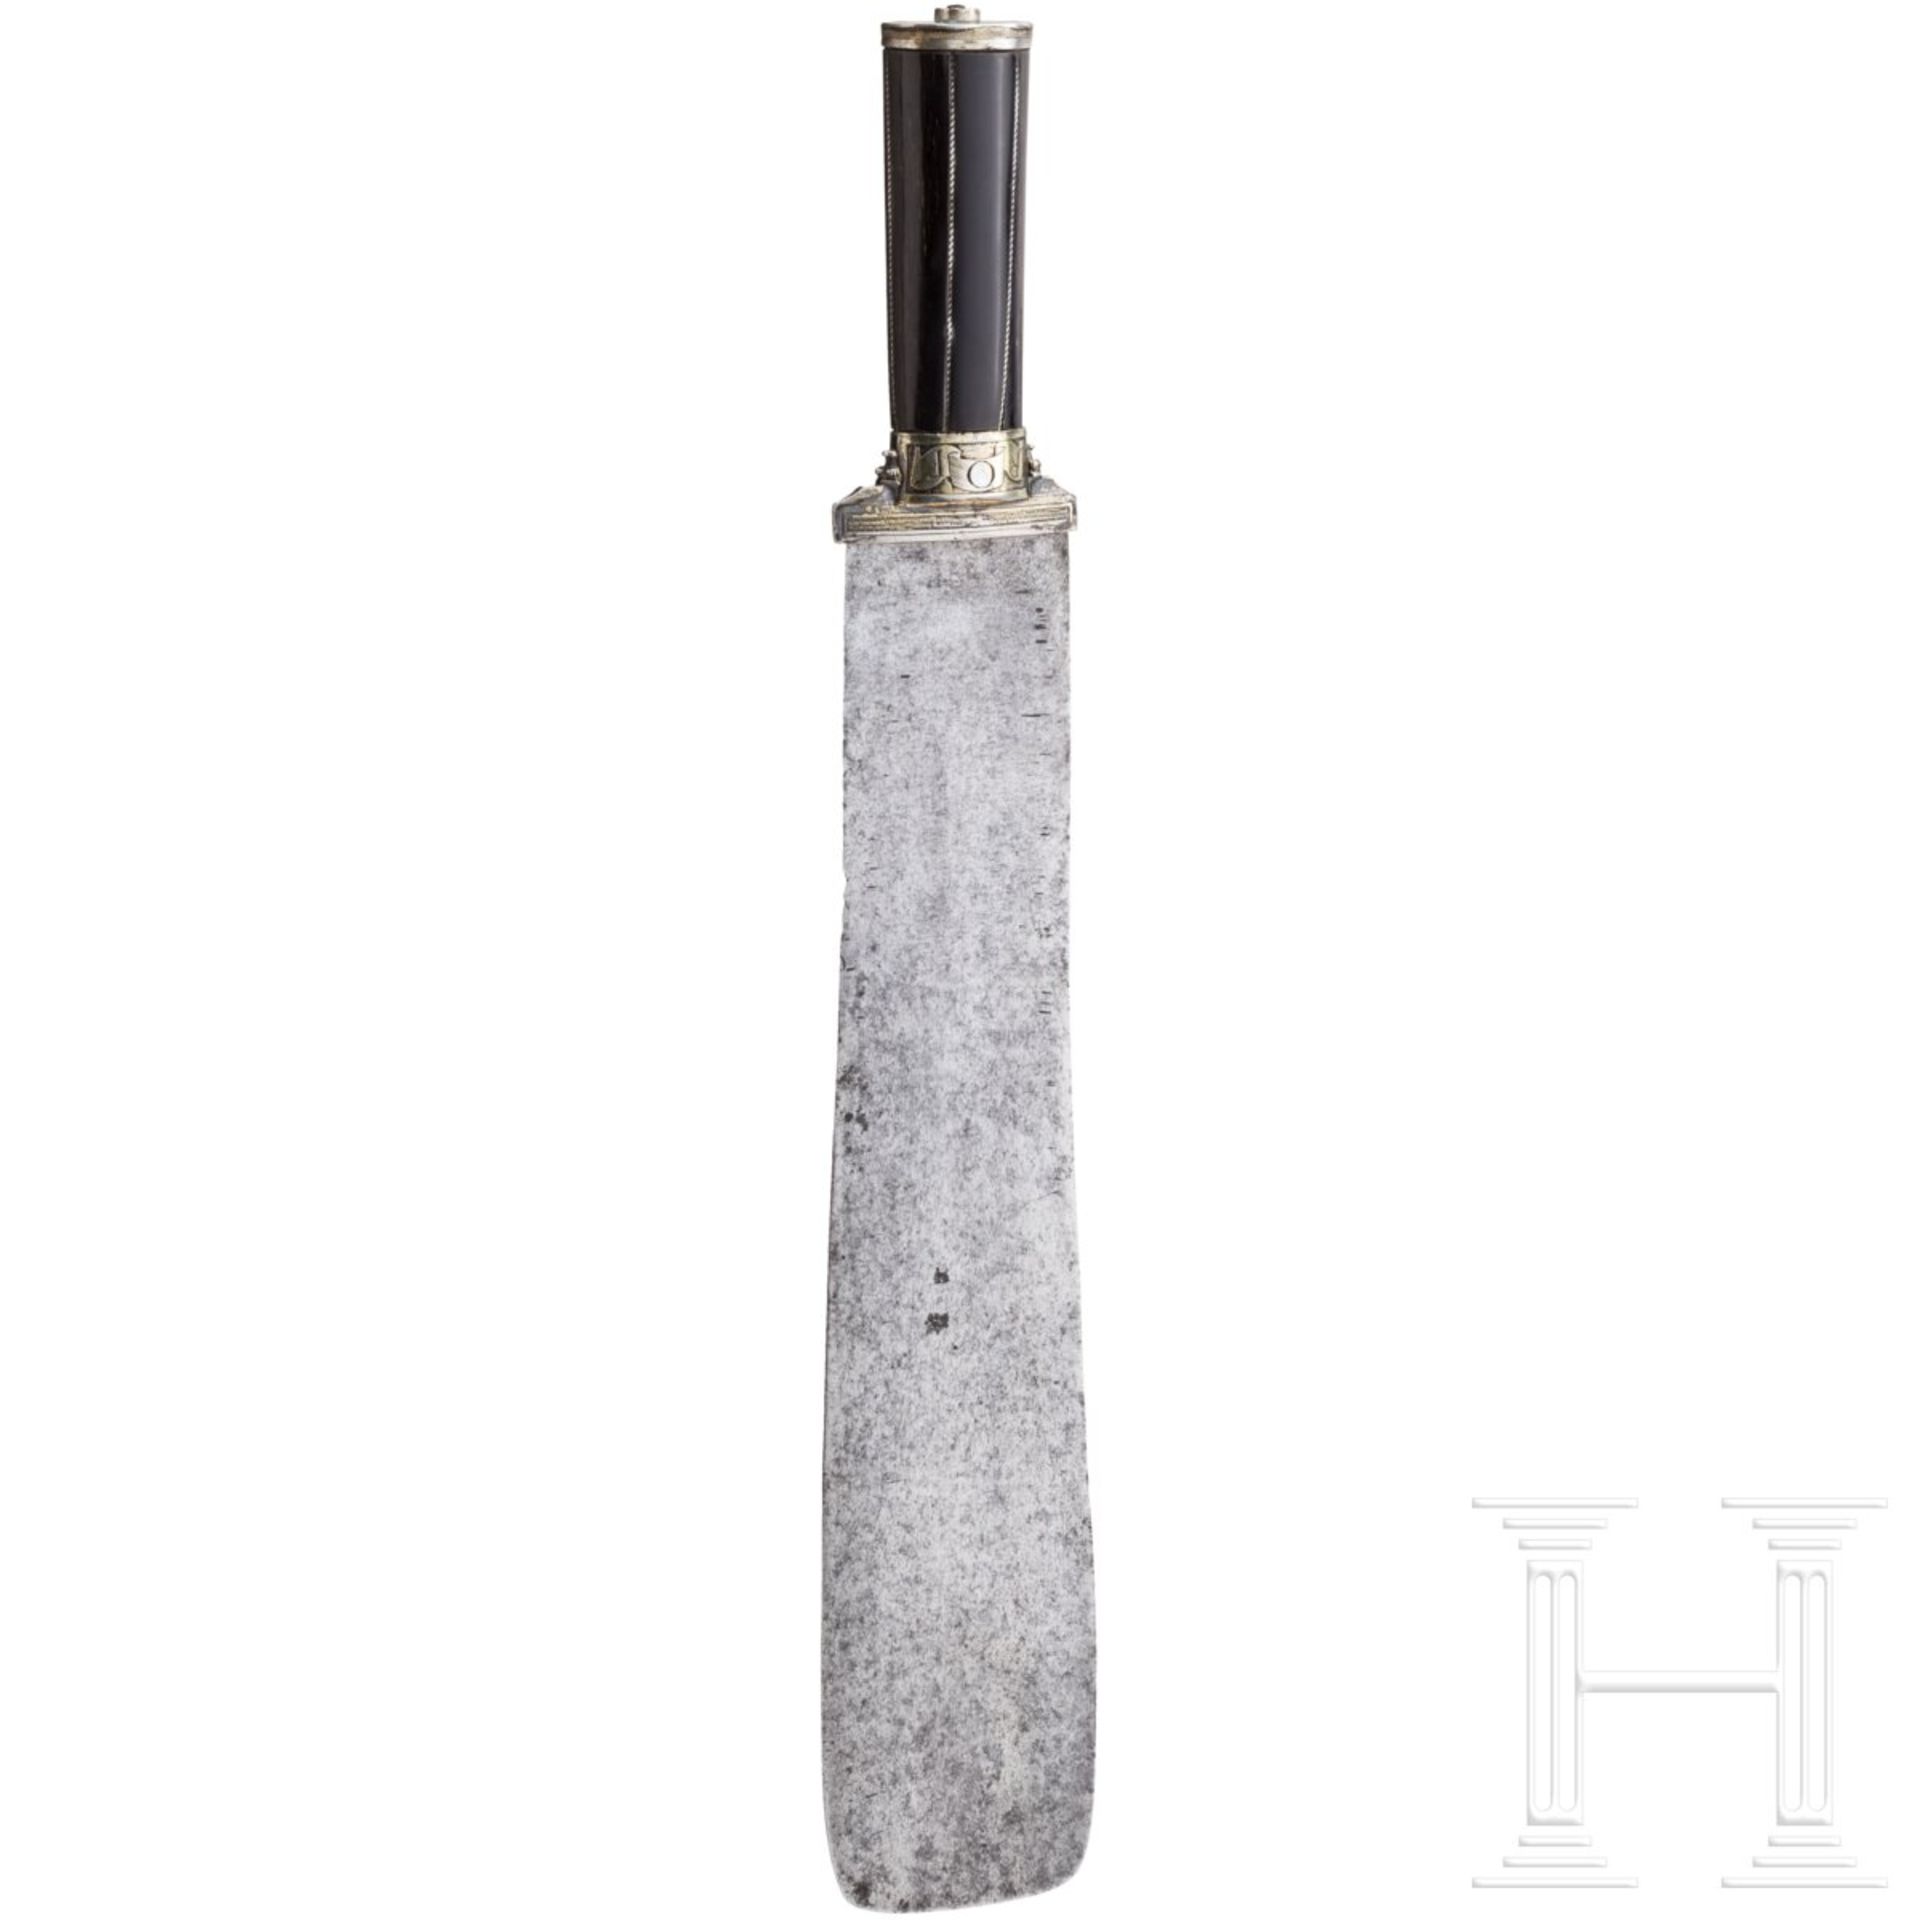 Silbermontiertes Vorlegemesser mit Griff aus Steinbockhorn, süddeutsch, 16. Jhdt. - Bild 2 aus 7